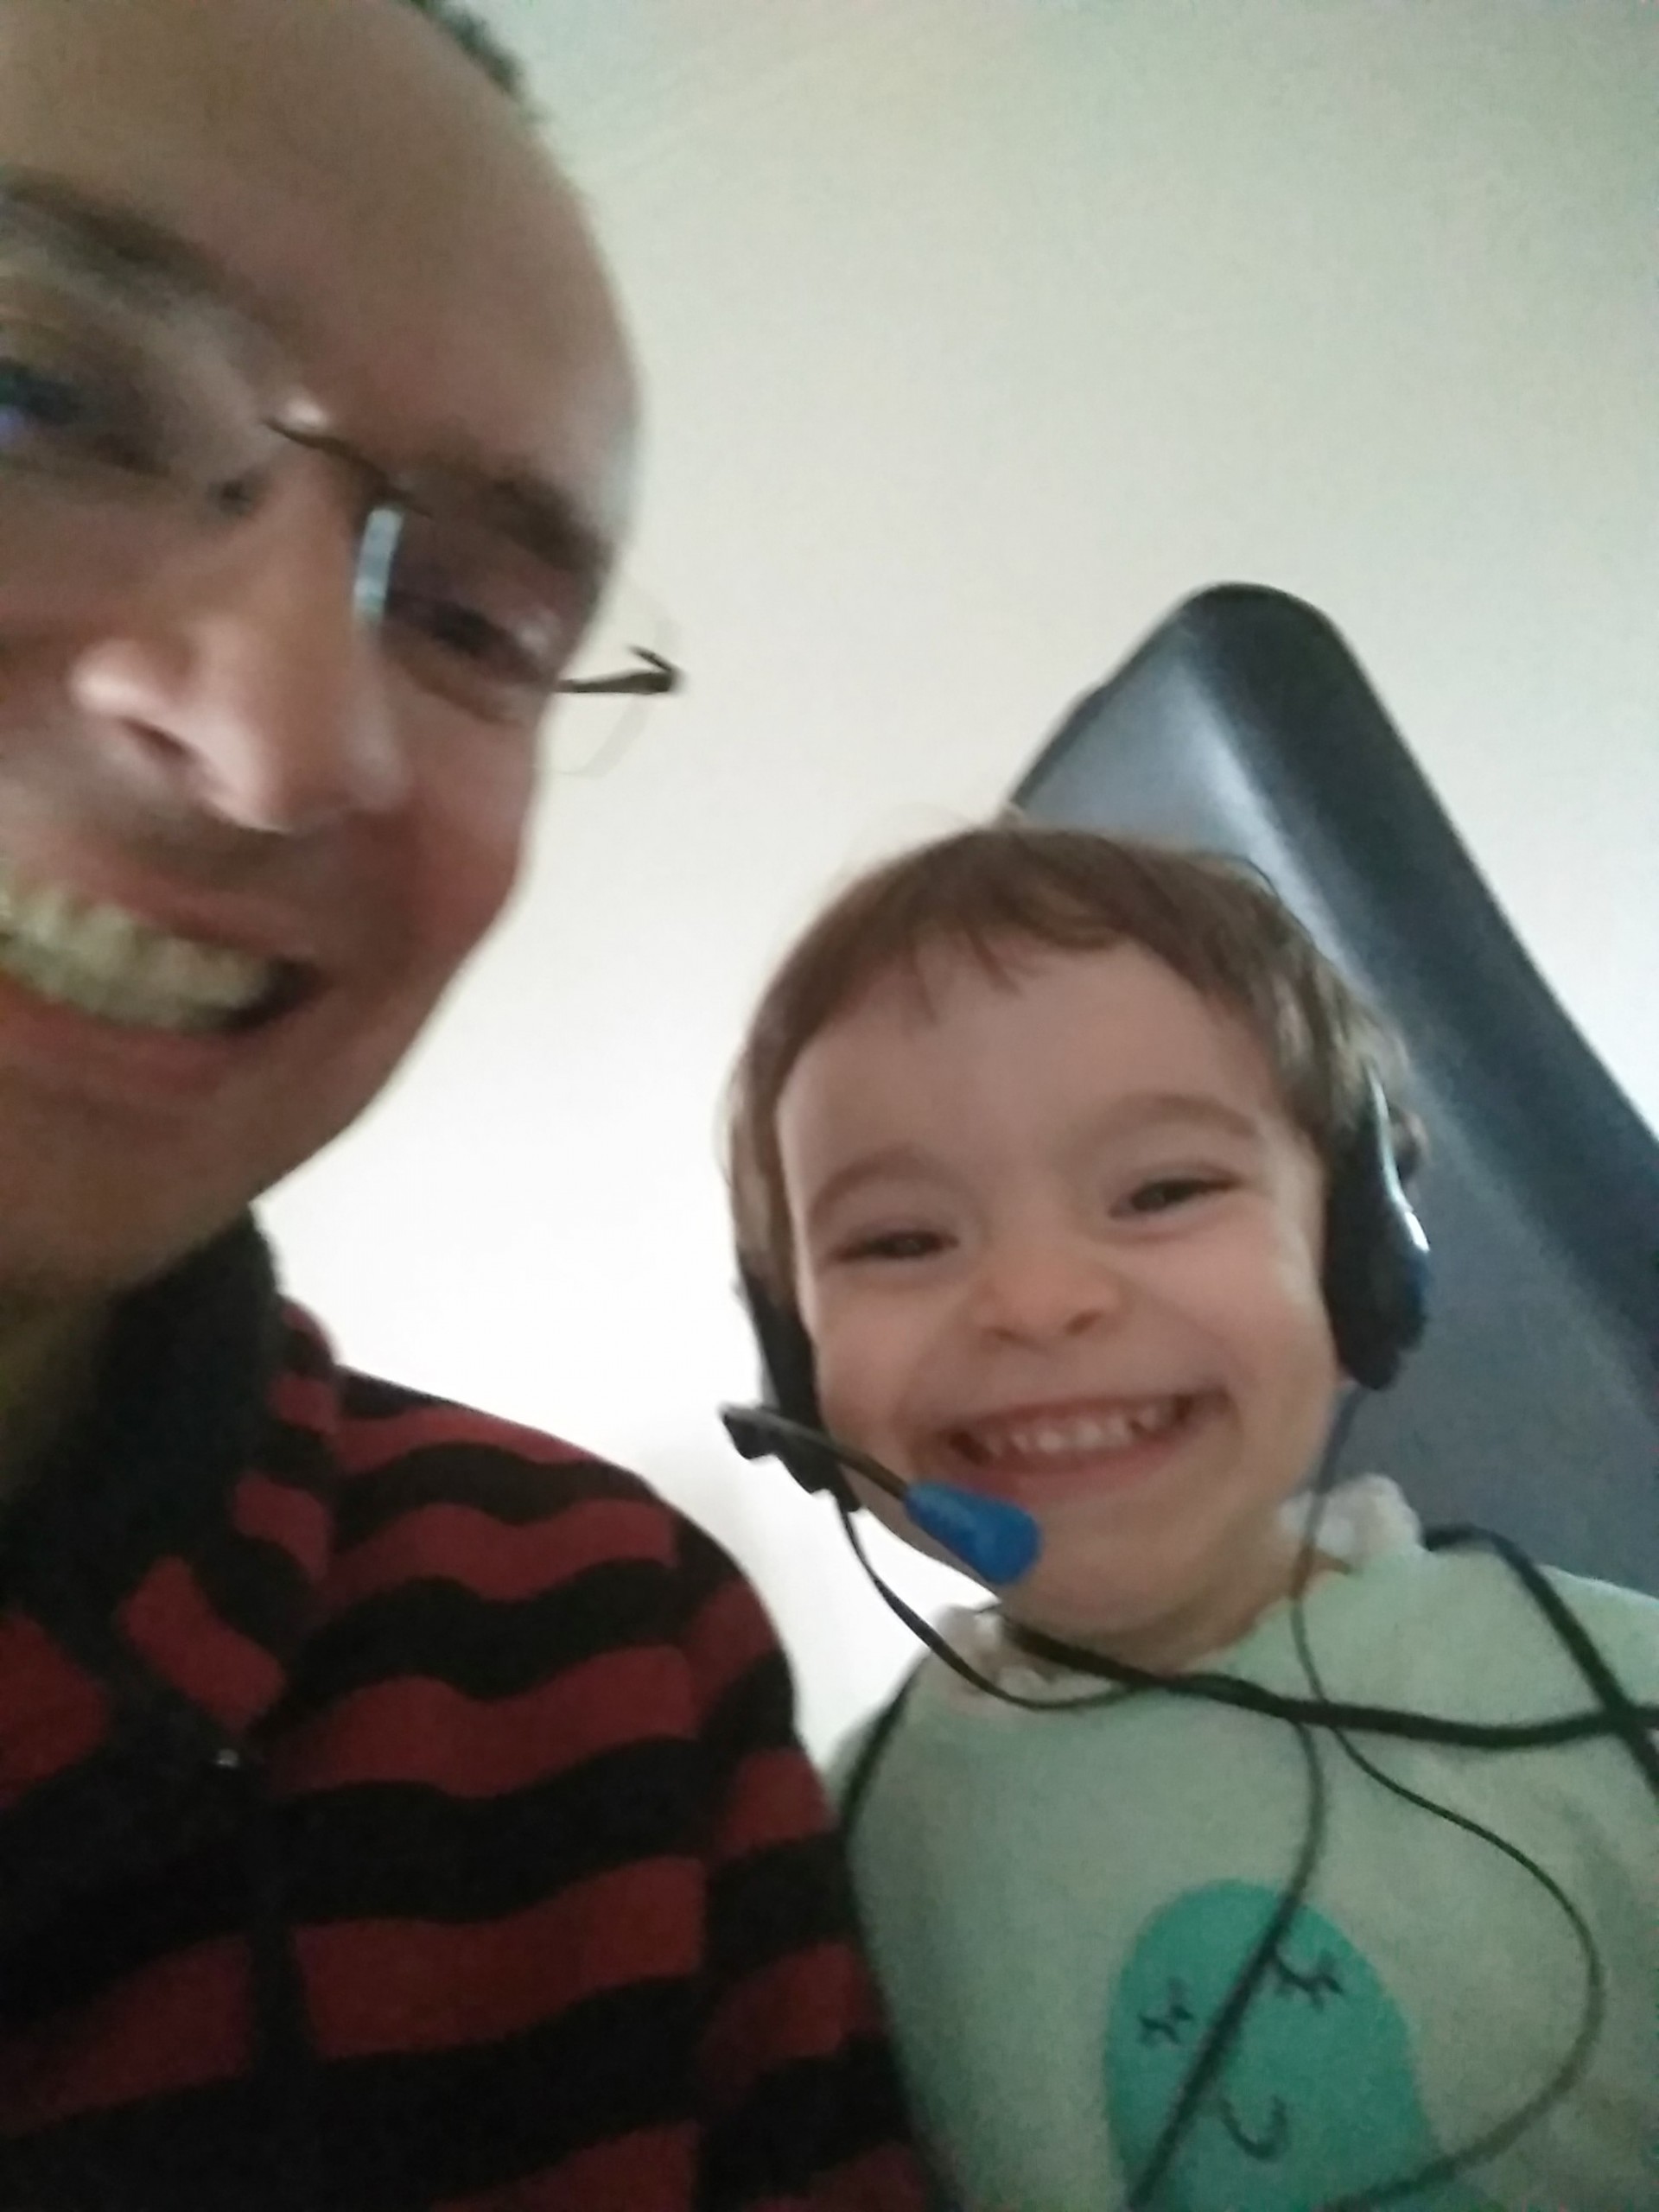 selfie de homem em regime de teletrabalho com filha de 2 anos. A menina sorri com os headsets do pai